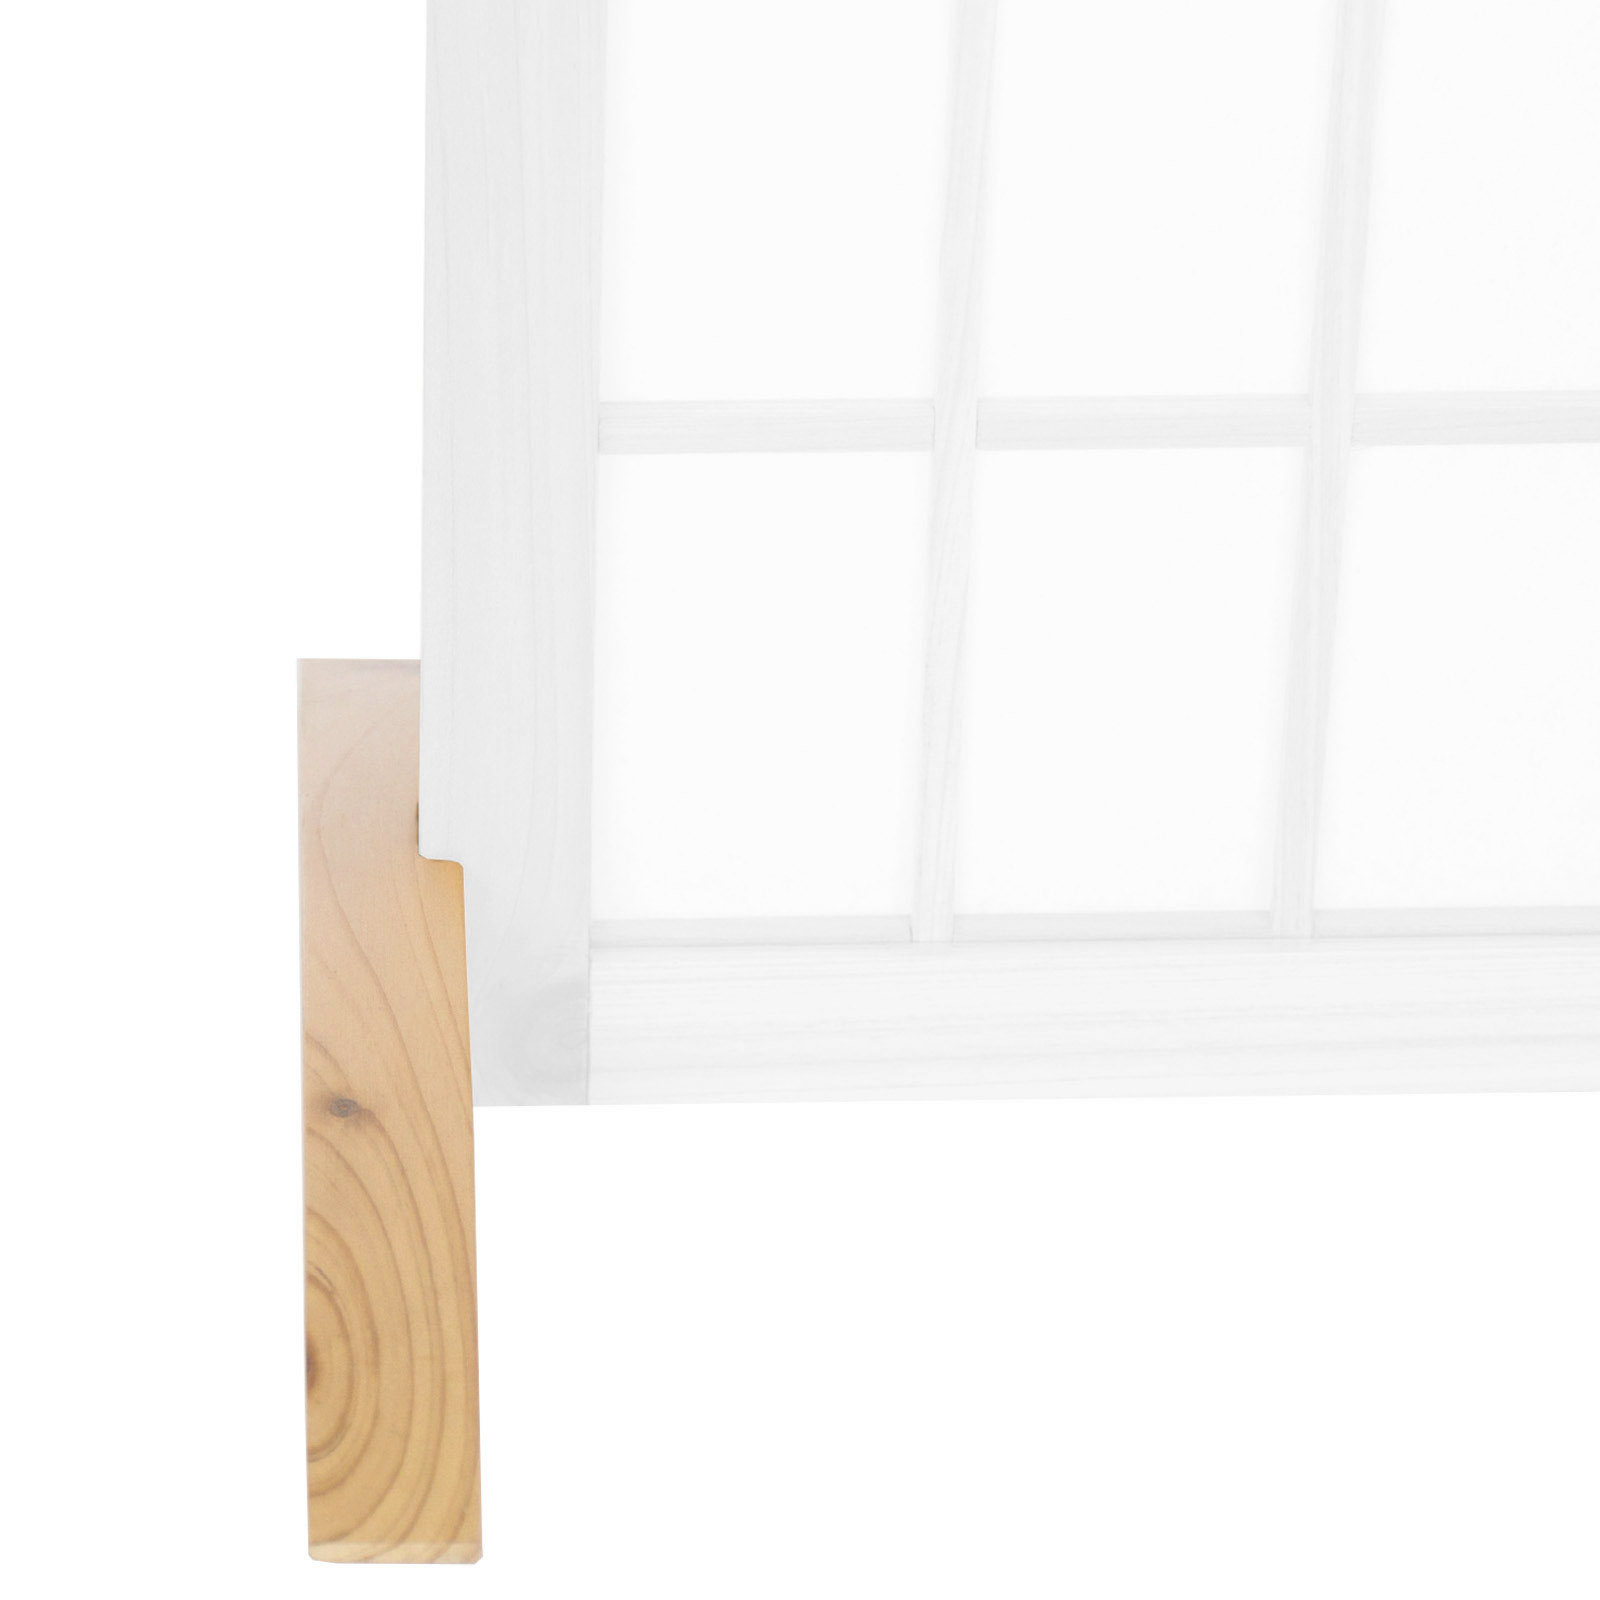 Raumteiler Standfuß 4 Farben Fuß für Paravent Trennwand spanische Wand Sichtschutz